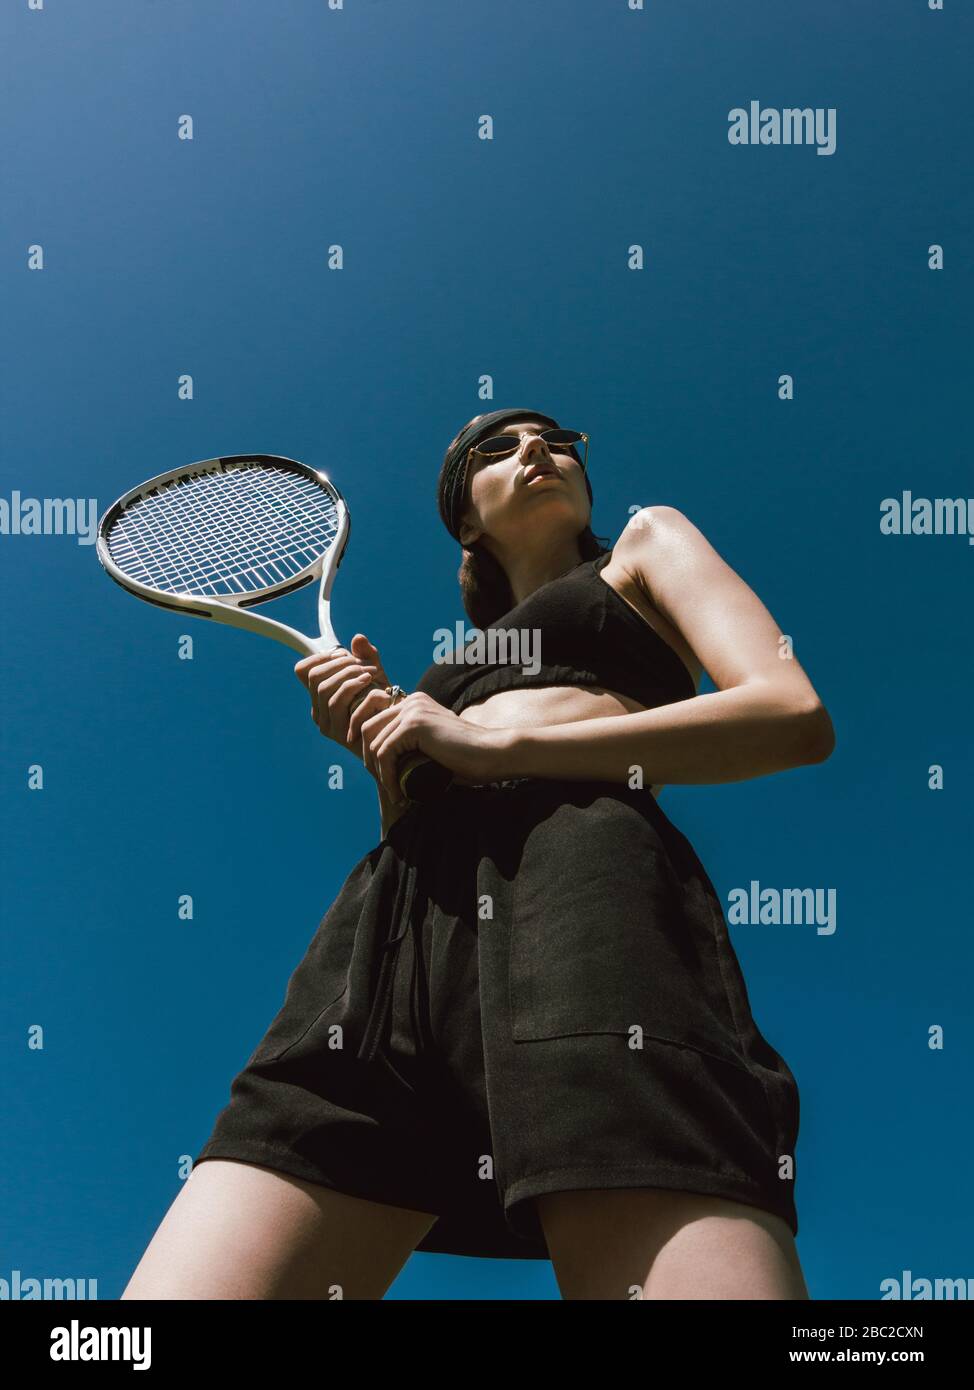 Poster Jeune joueur de tennis femme 